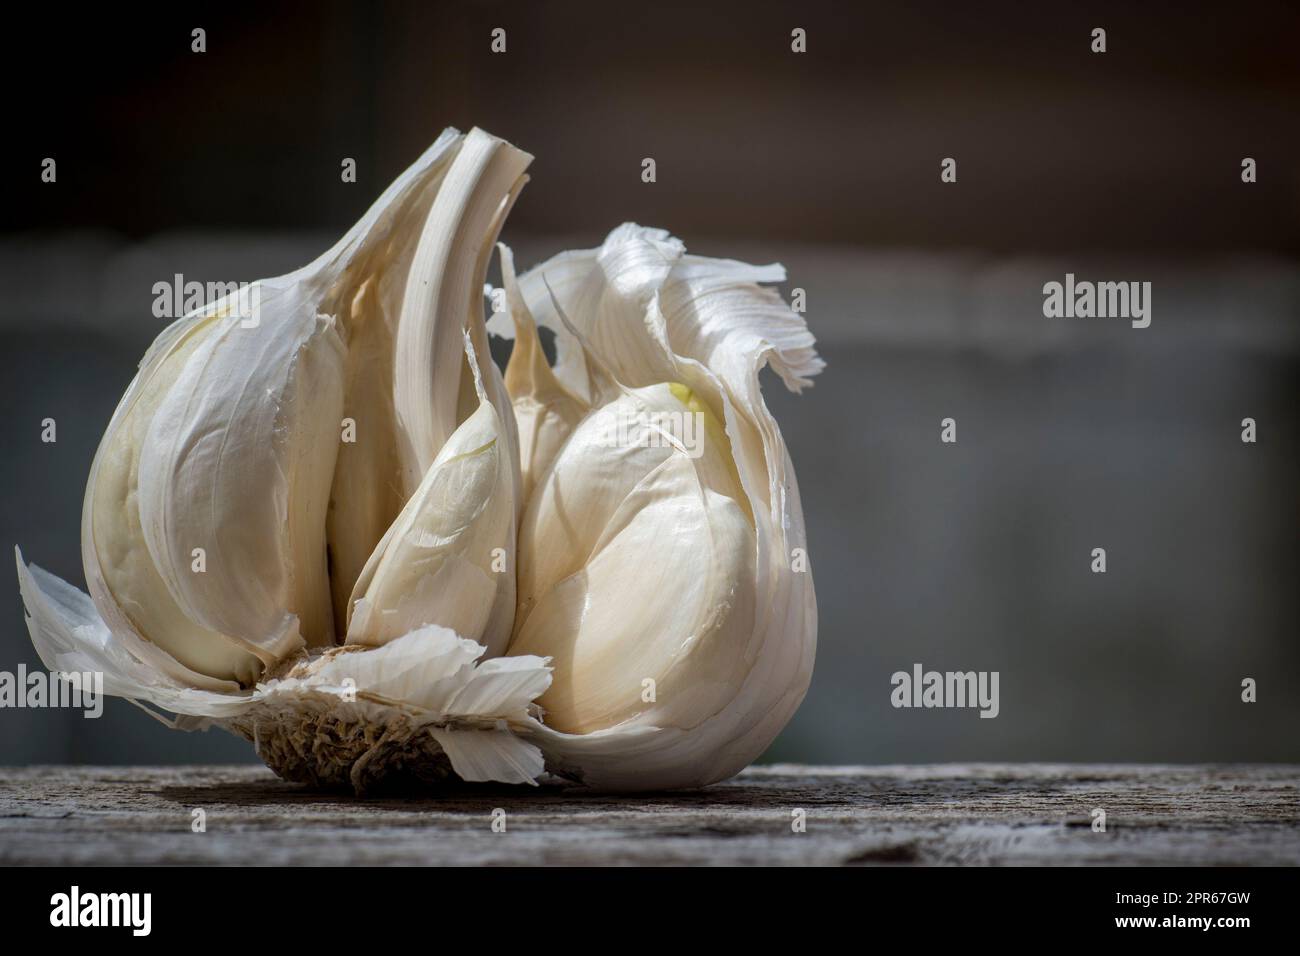 Primo piano di aglio, Allium sativum, utilizzato per l'aromatizzazione alimentare Foto Stock